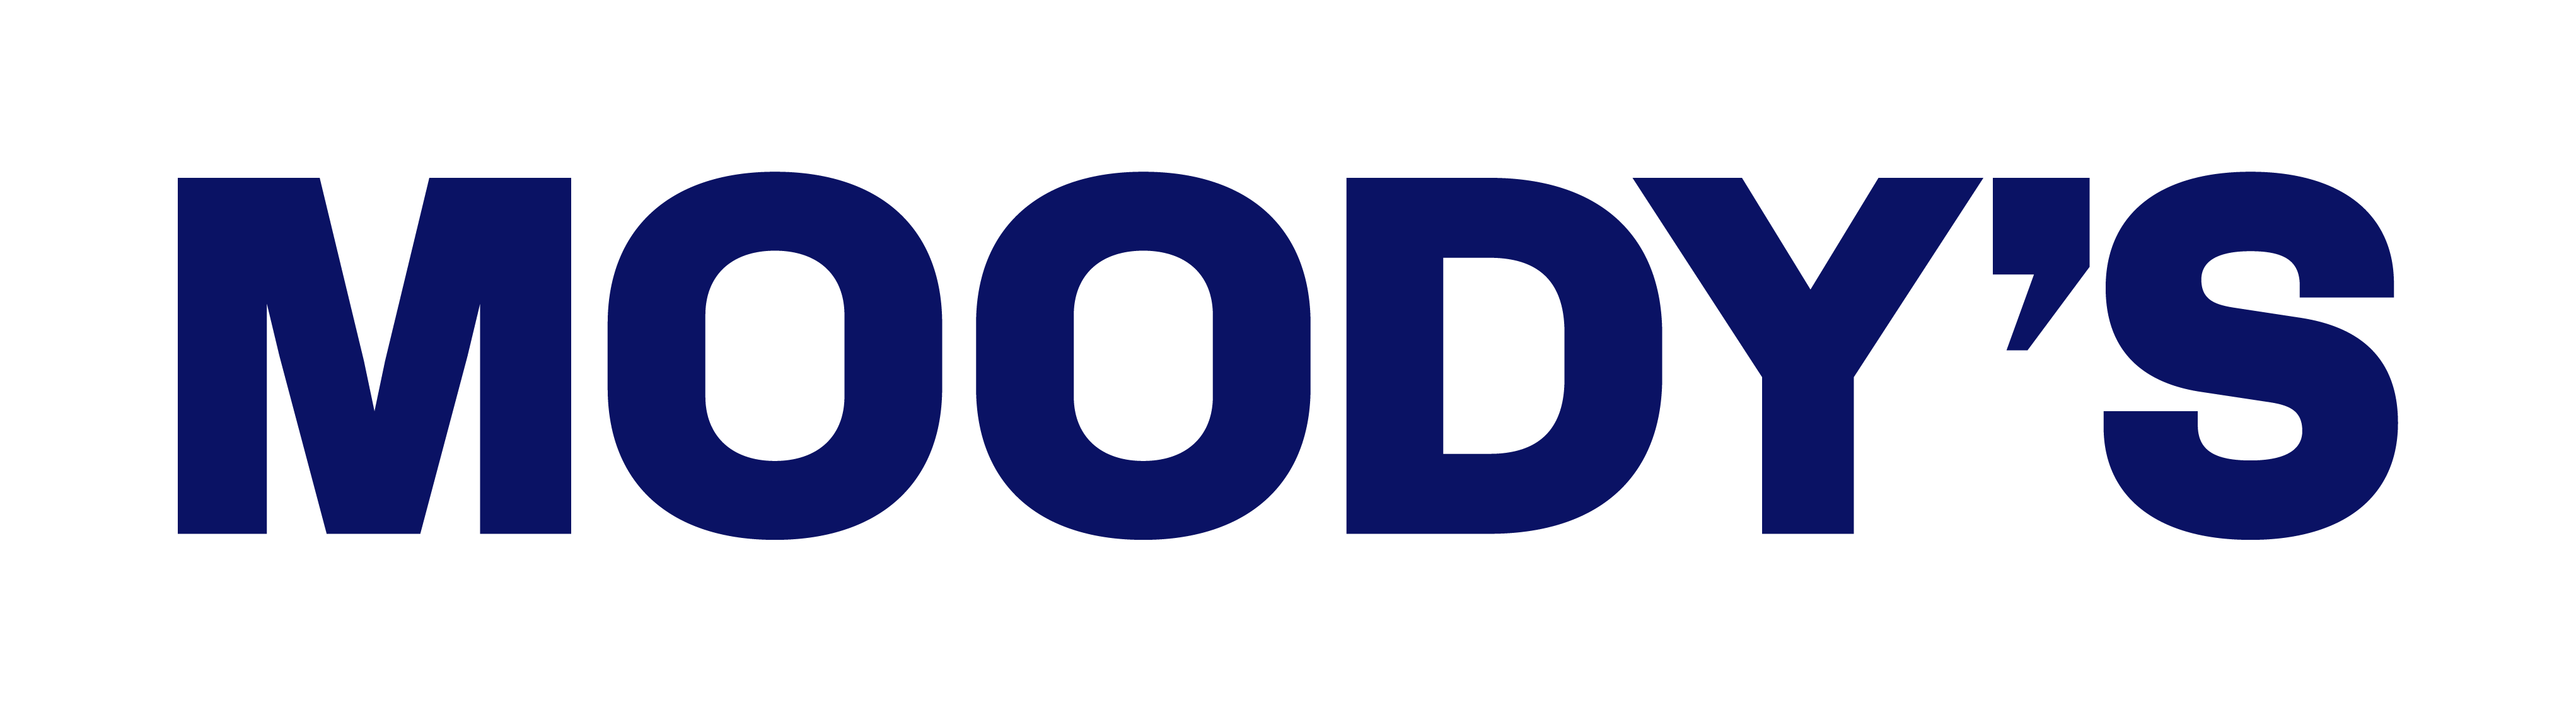 Moody's Logo Blue